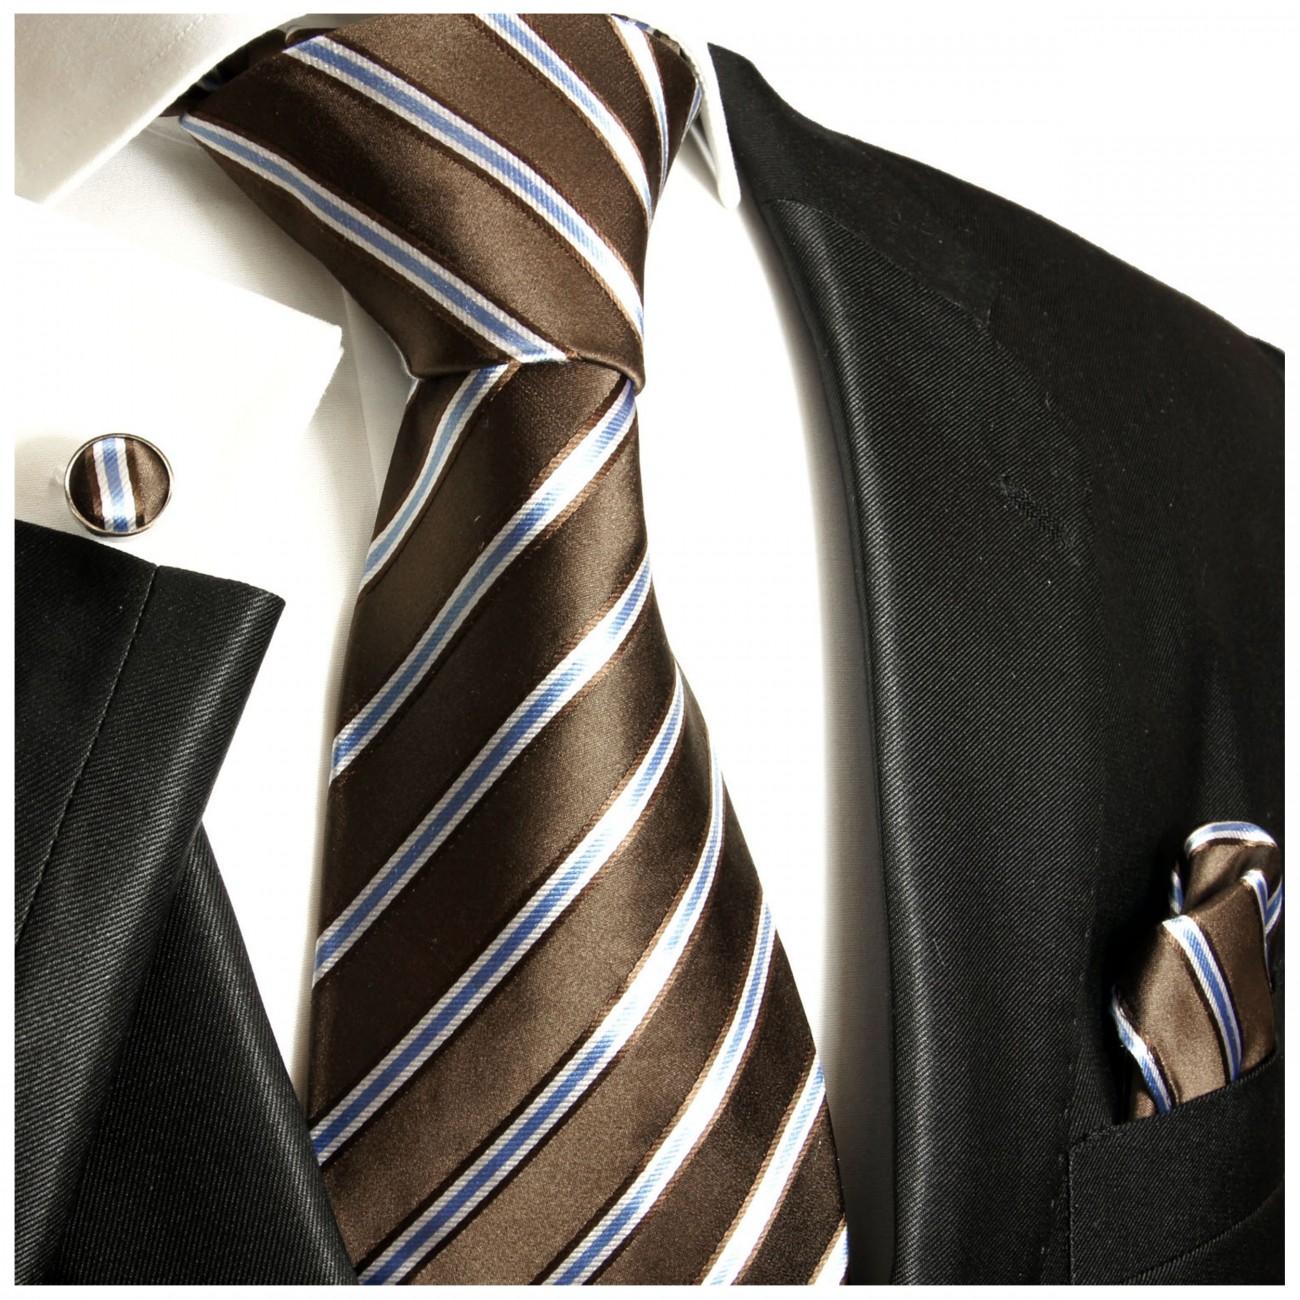 Krawatte braun blau gestreift Seide mit Einstecktuch und Manschettenknöpfe